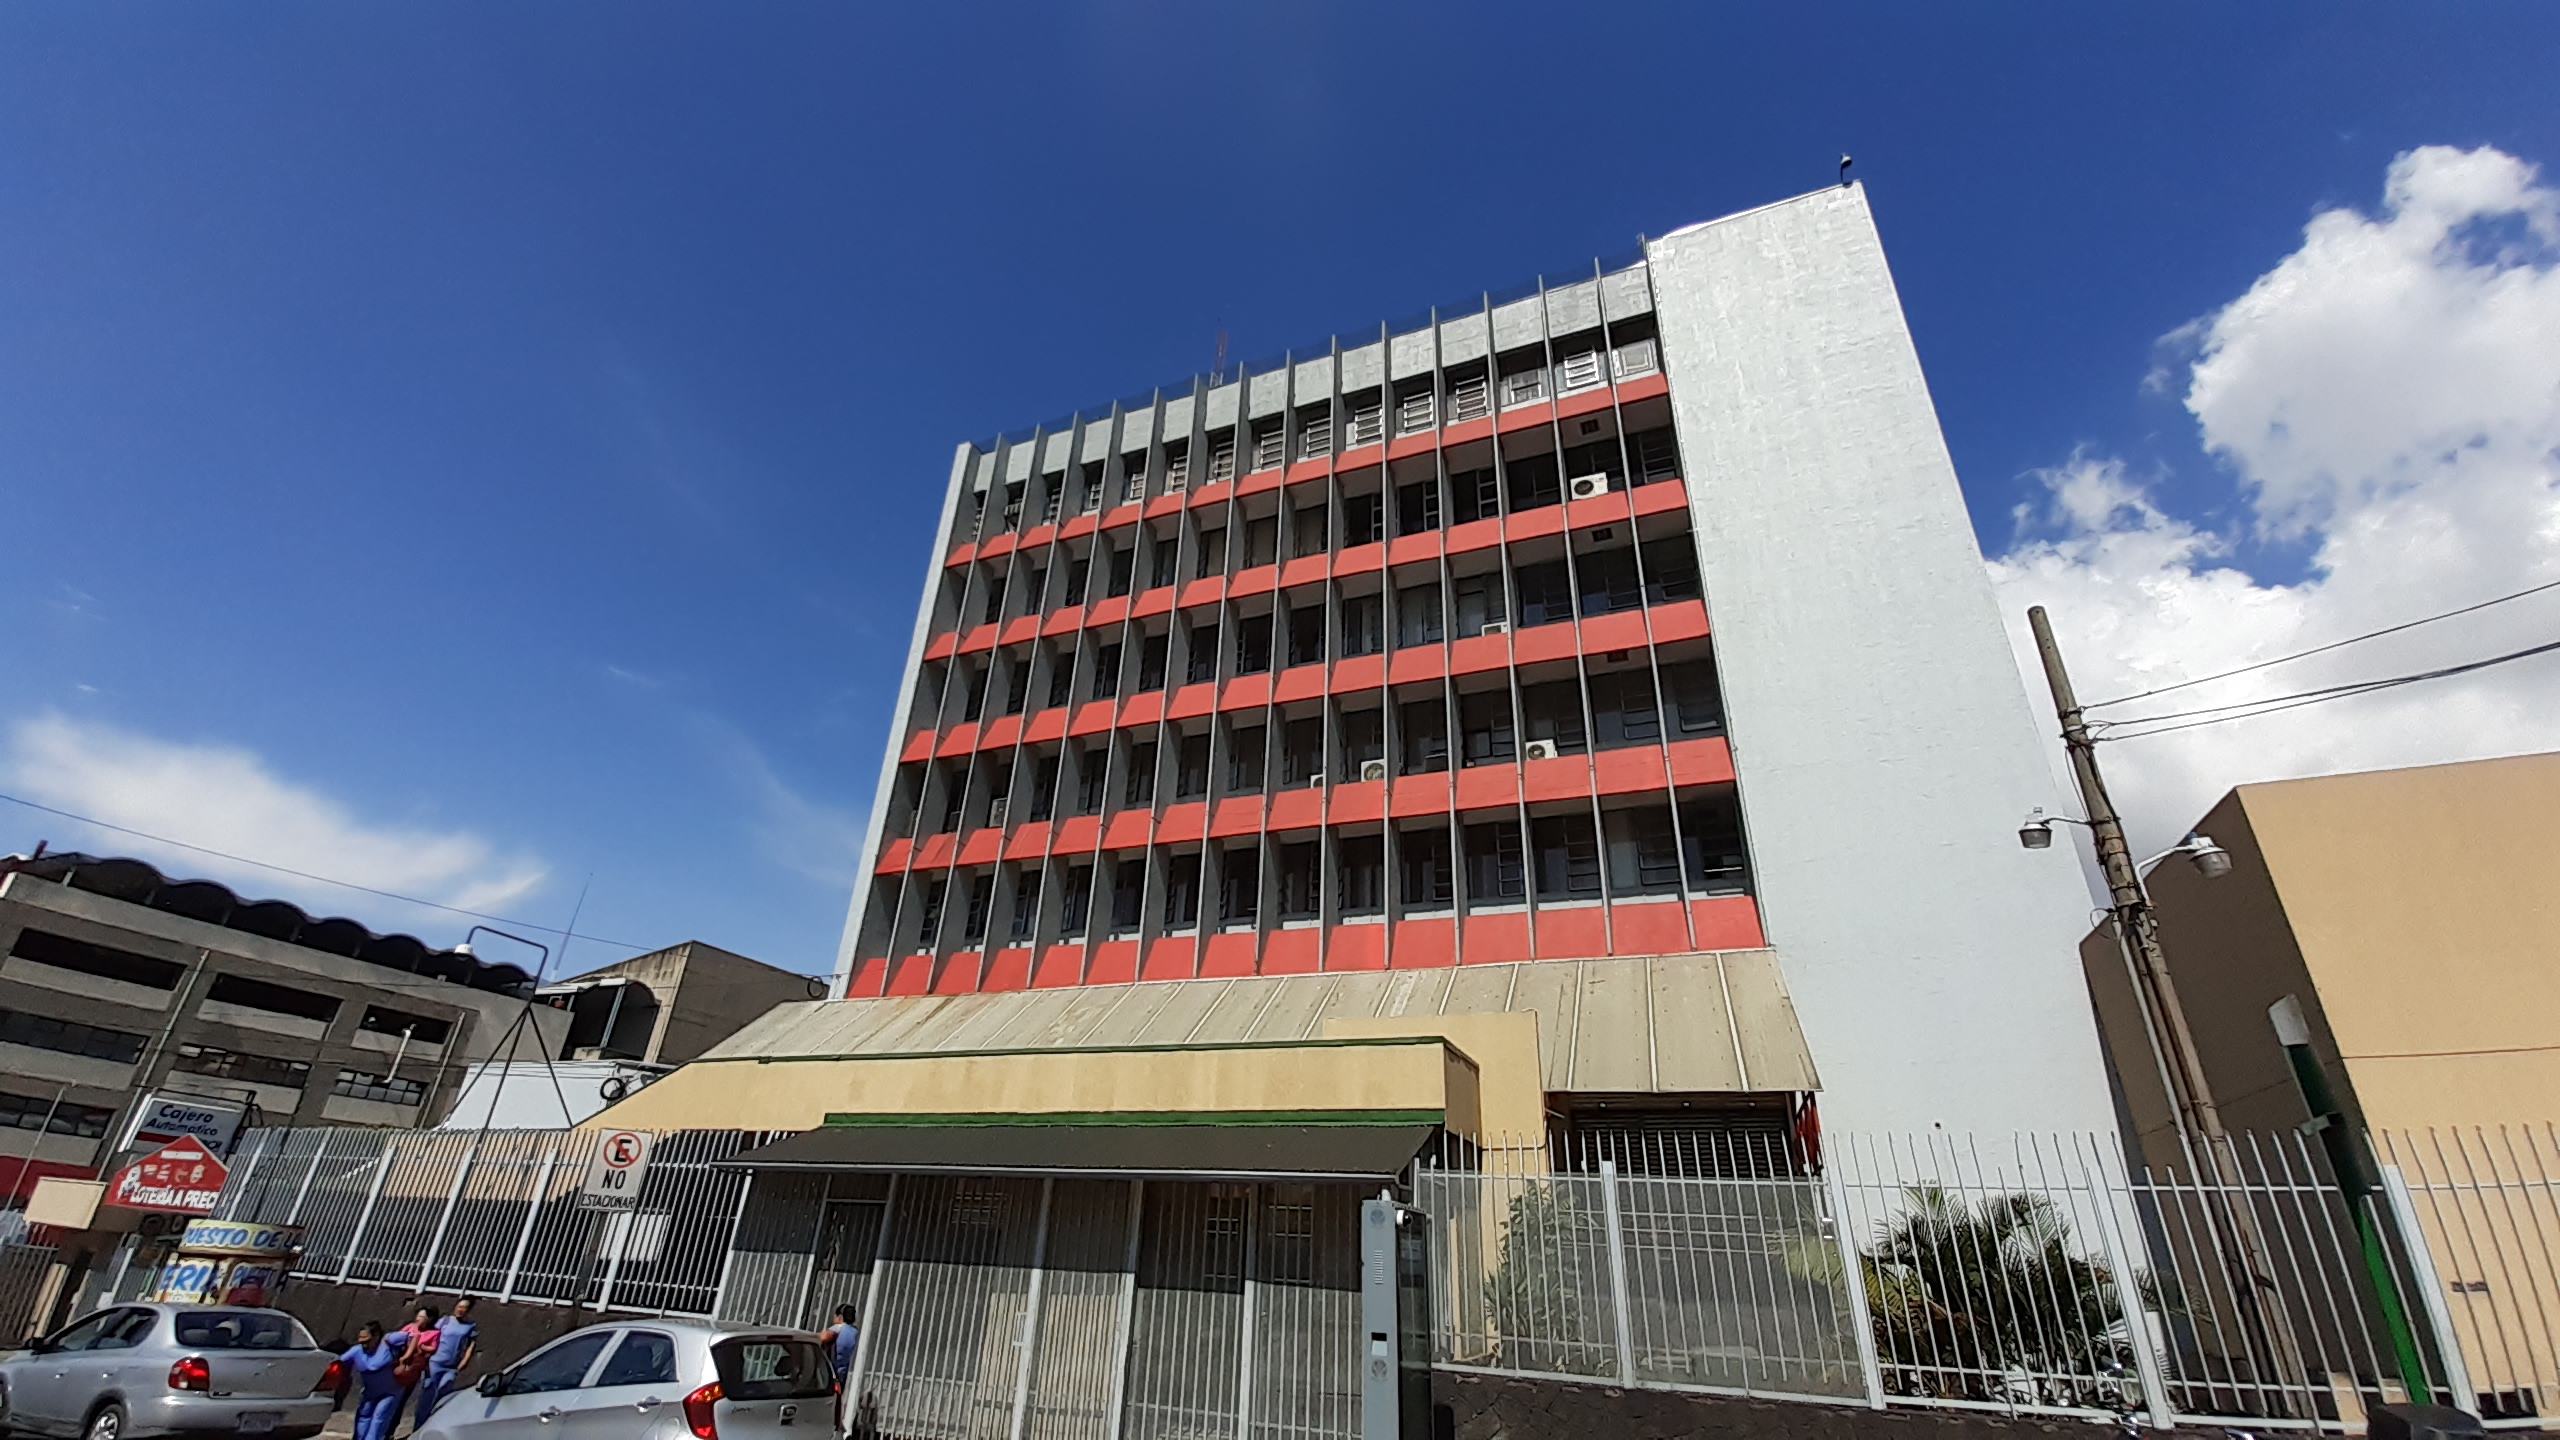 Edificio Principal de la Junta de Protección Social, foto de Carlos Bejarano @bejardo